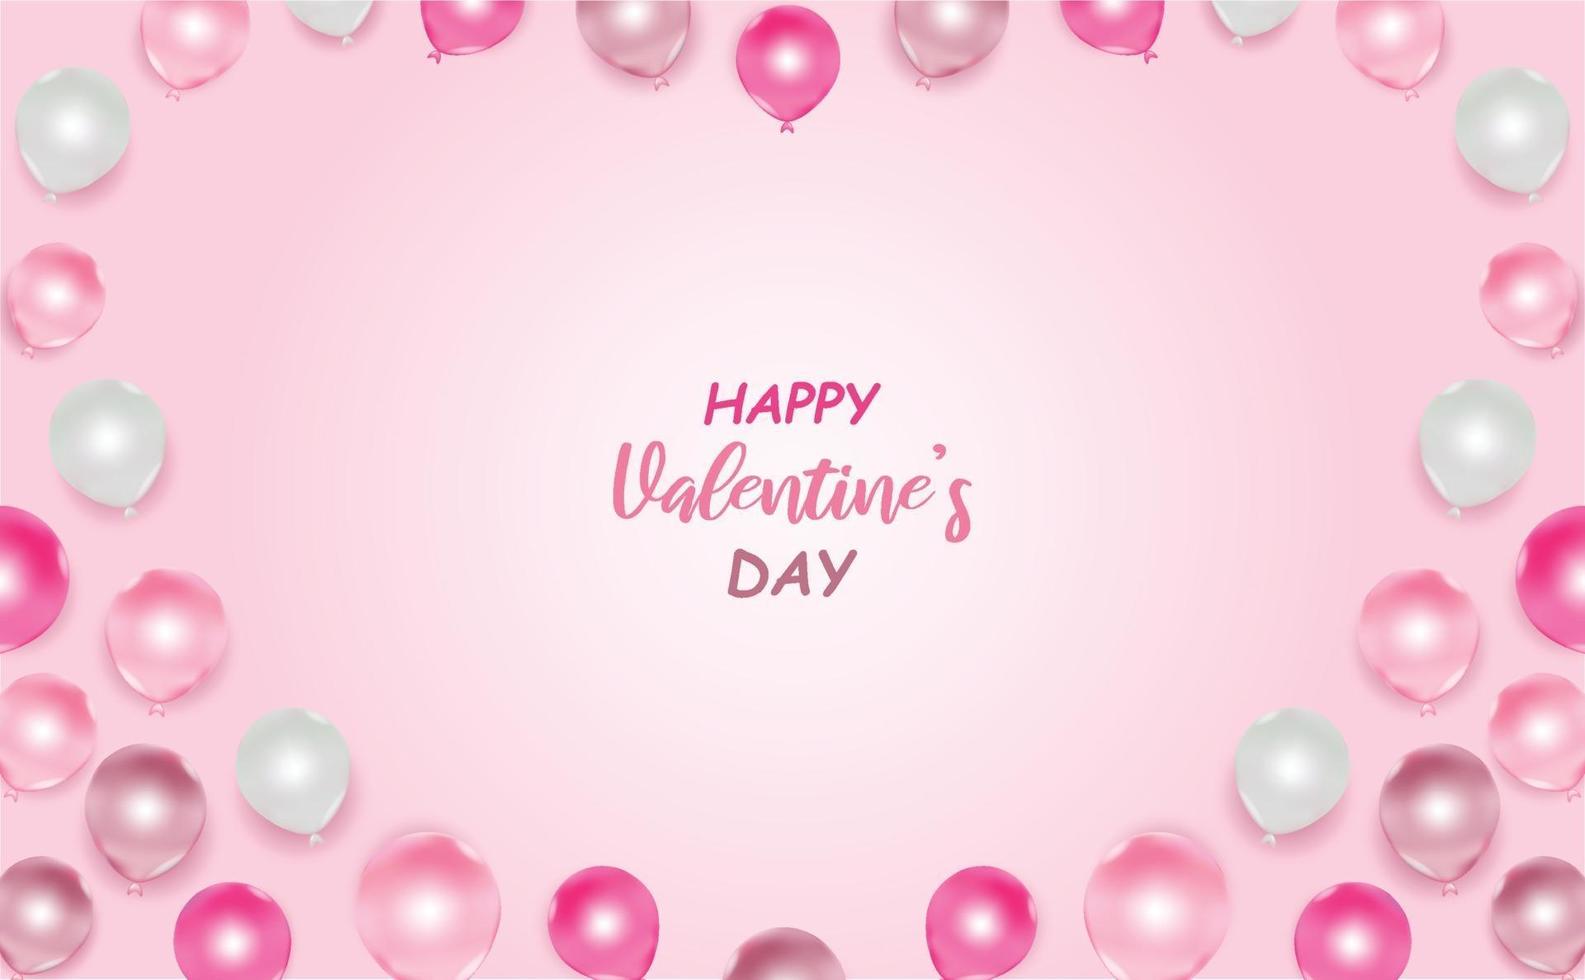 kärleks- och alla hjärtans vykort med rosa och vita ballonger vektor